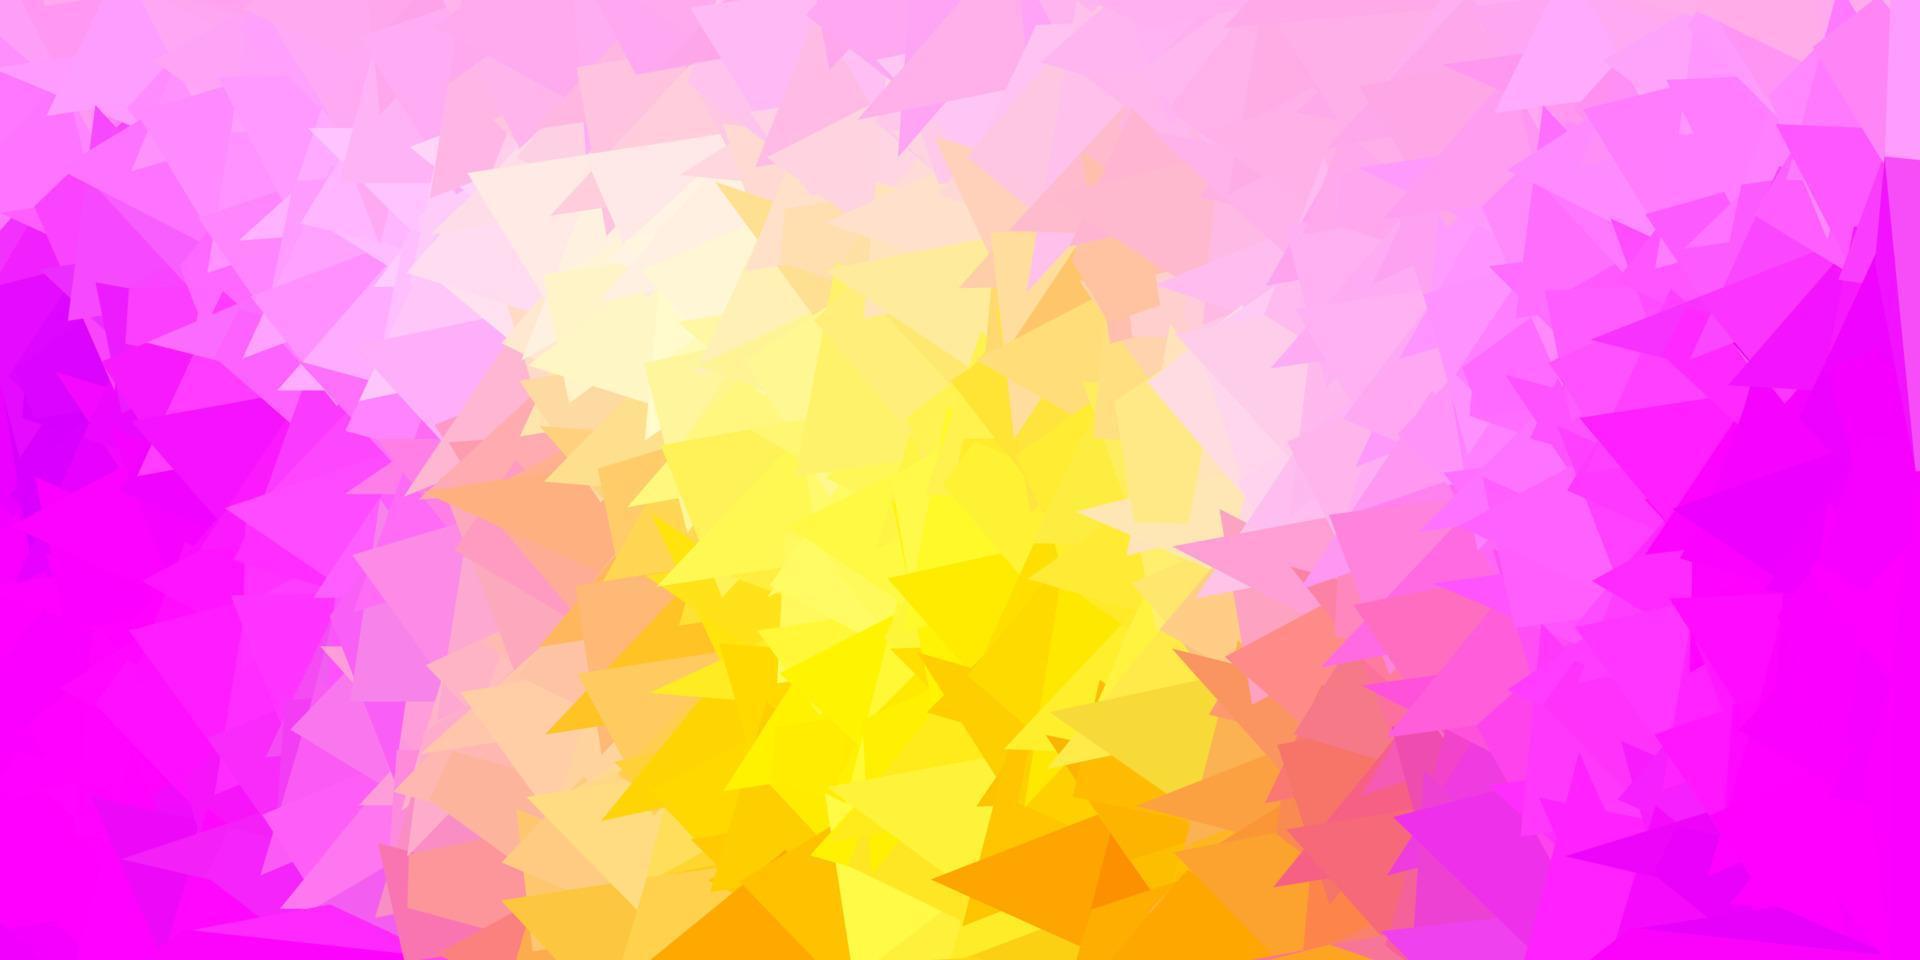 disegno poligonale geometrico di vettore rosa chiaro, giallo.